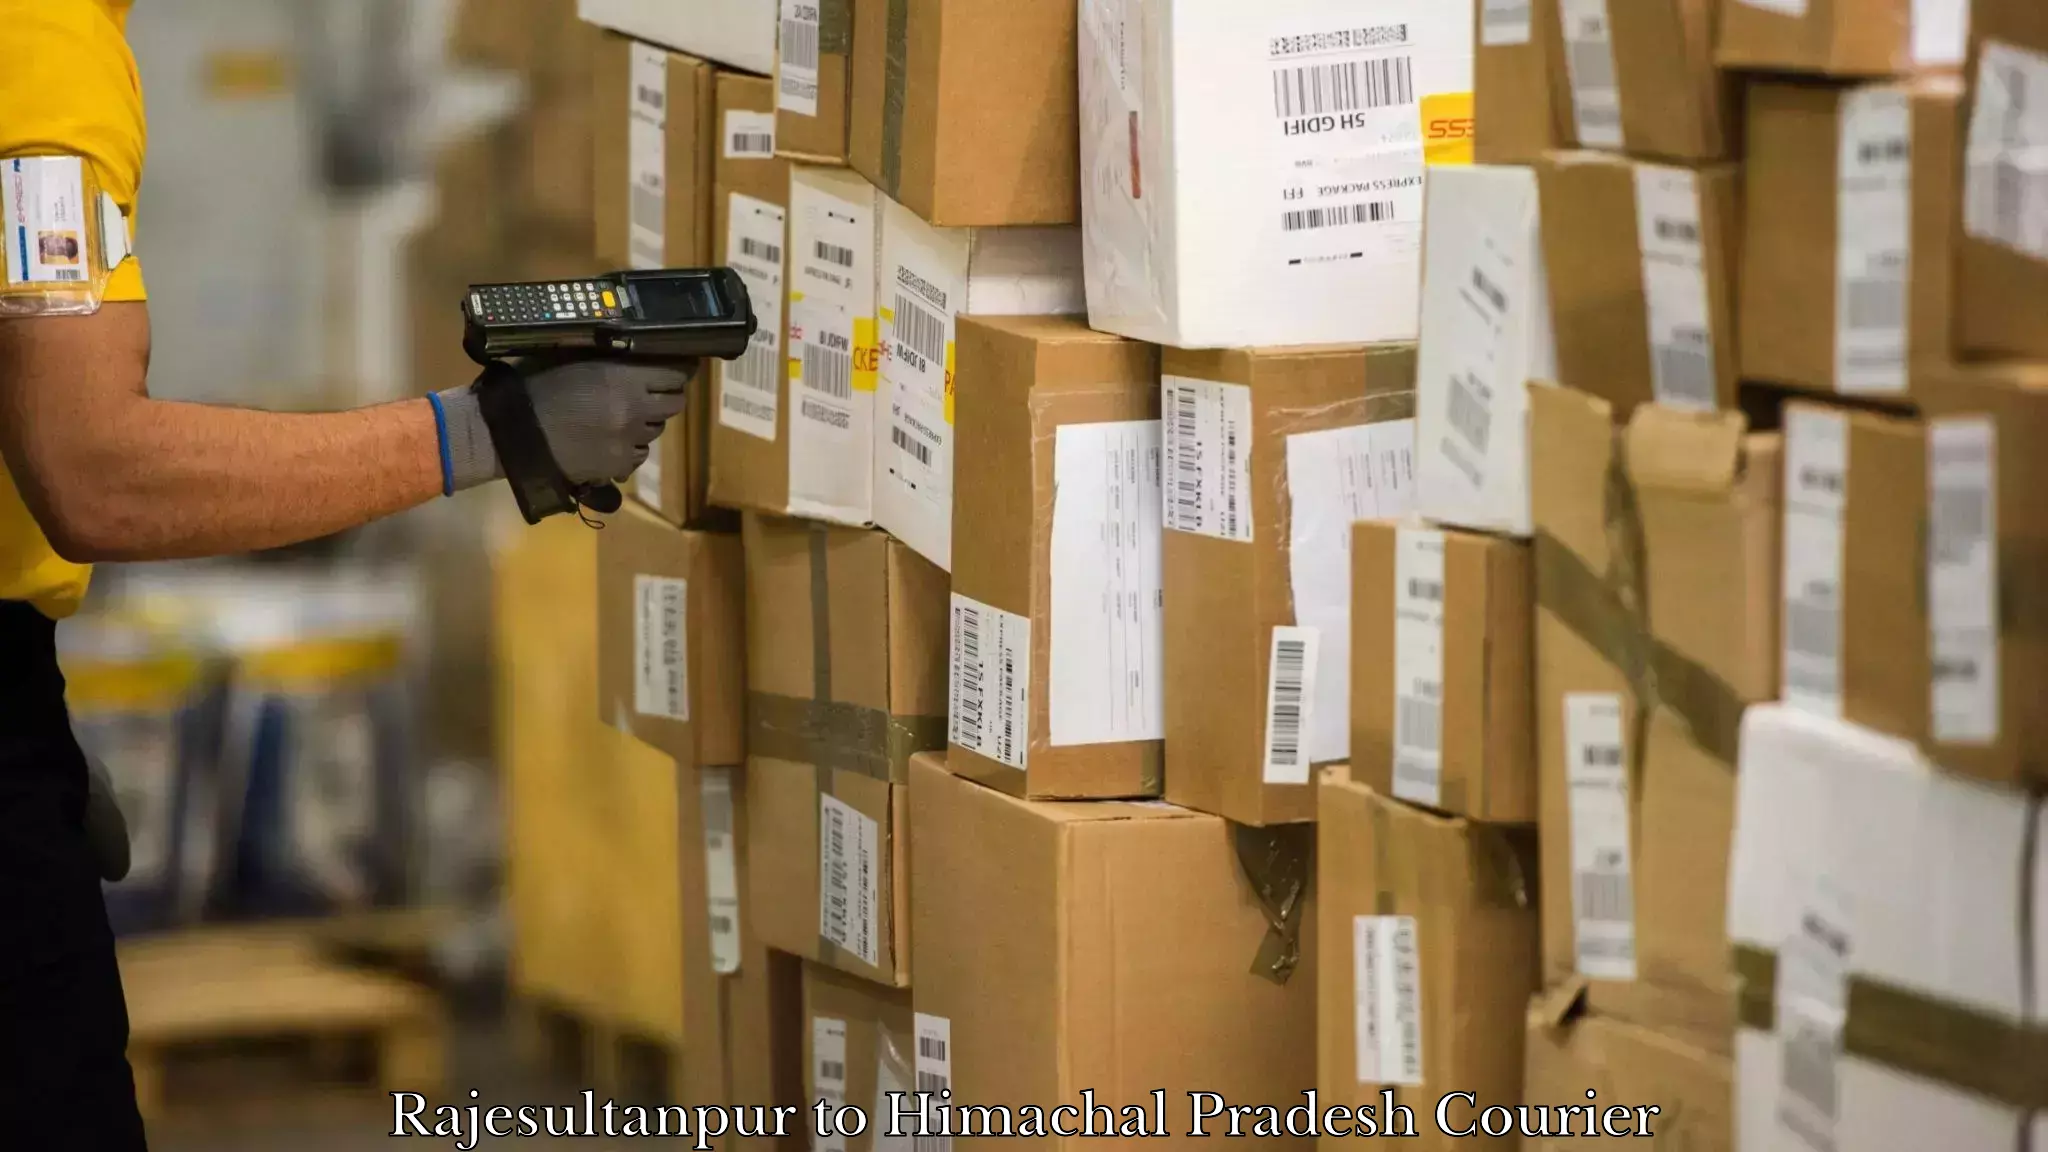 Secure packaging Rajesultanpur to Himachal Pradesh